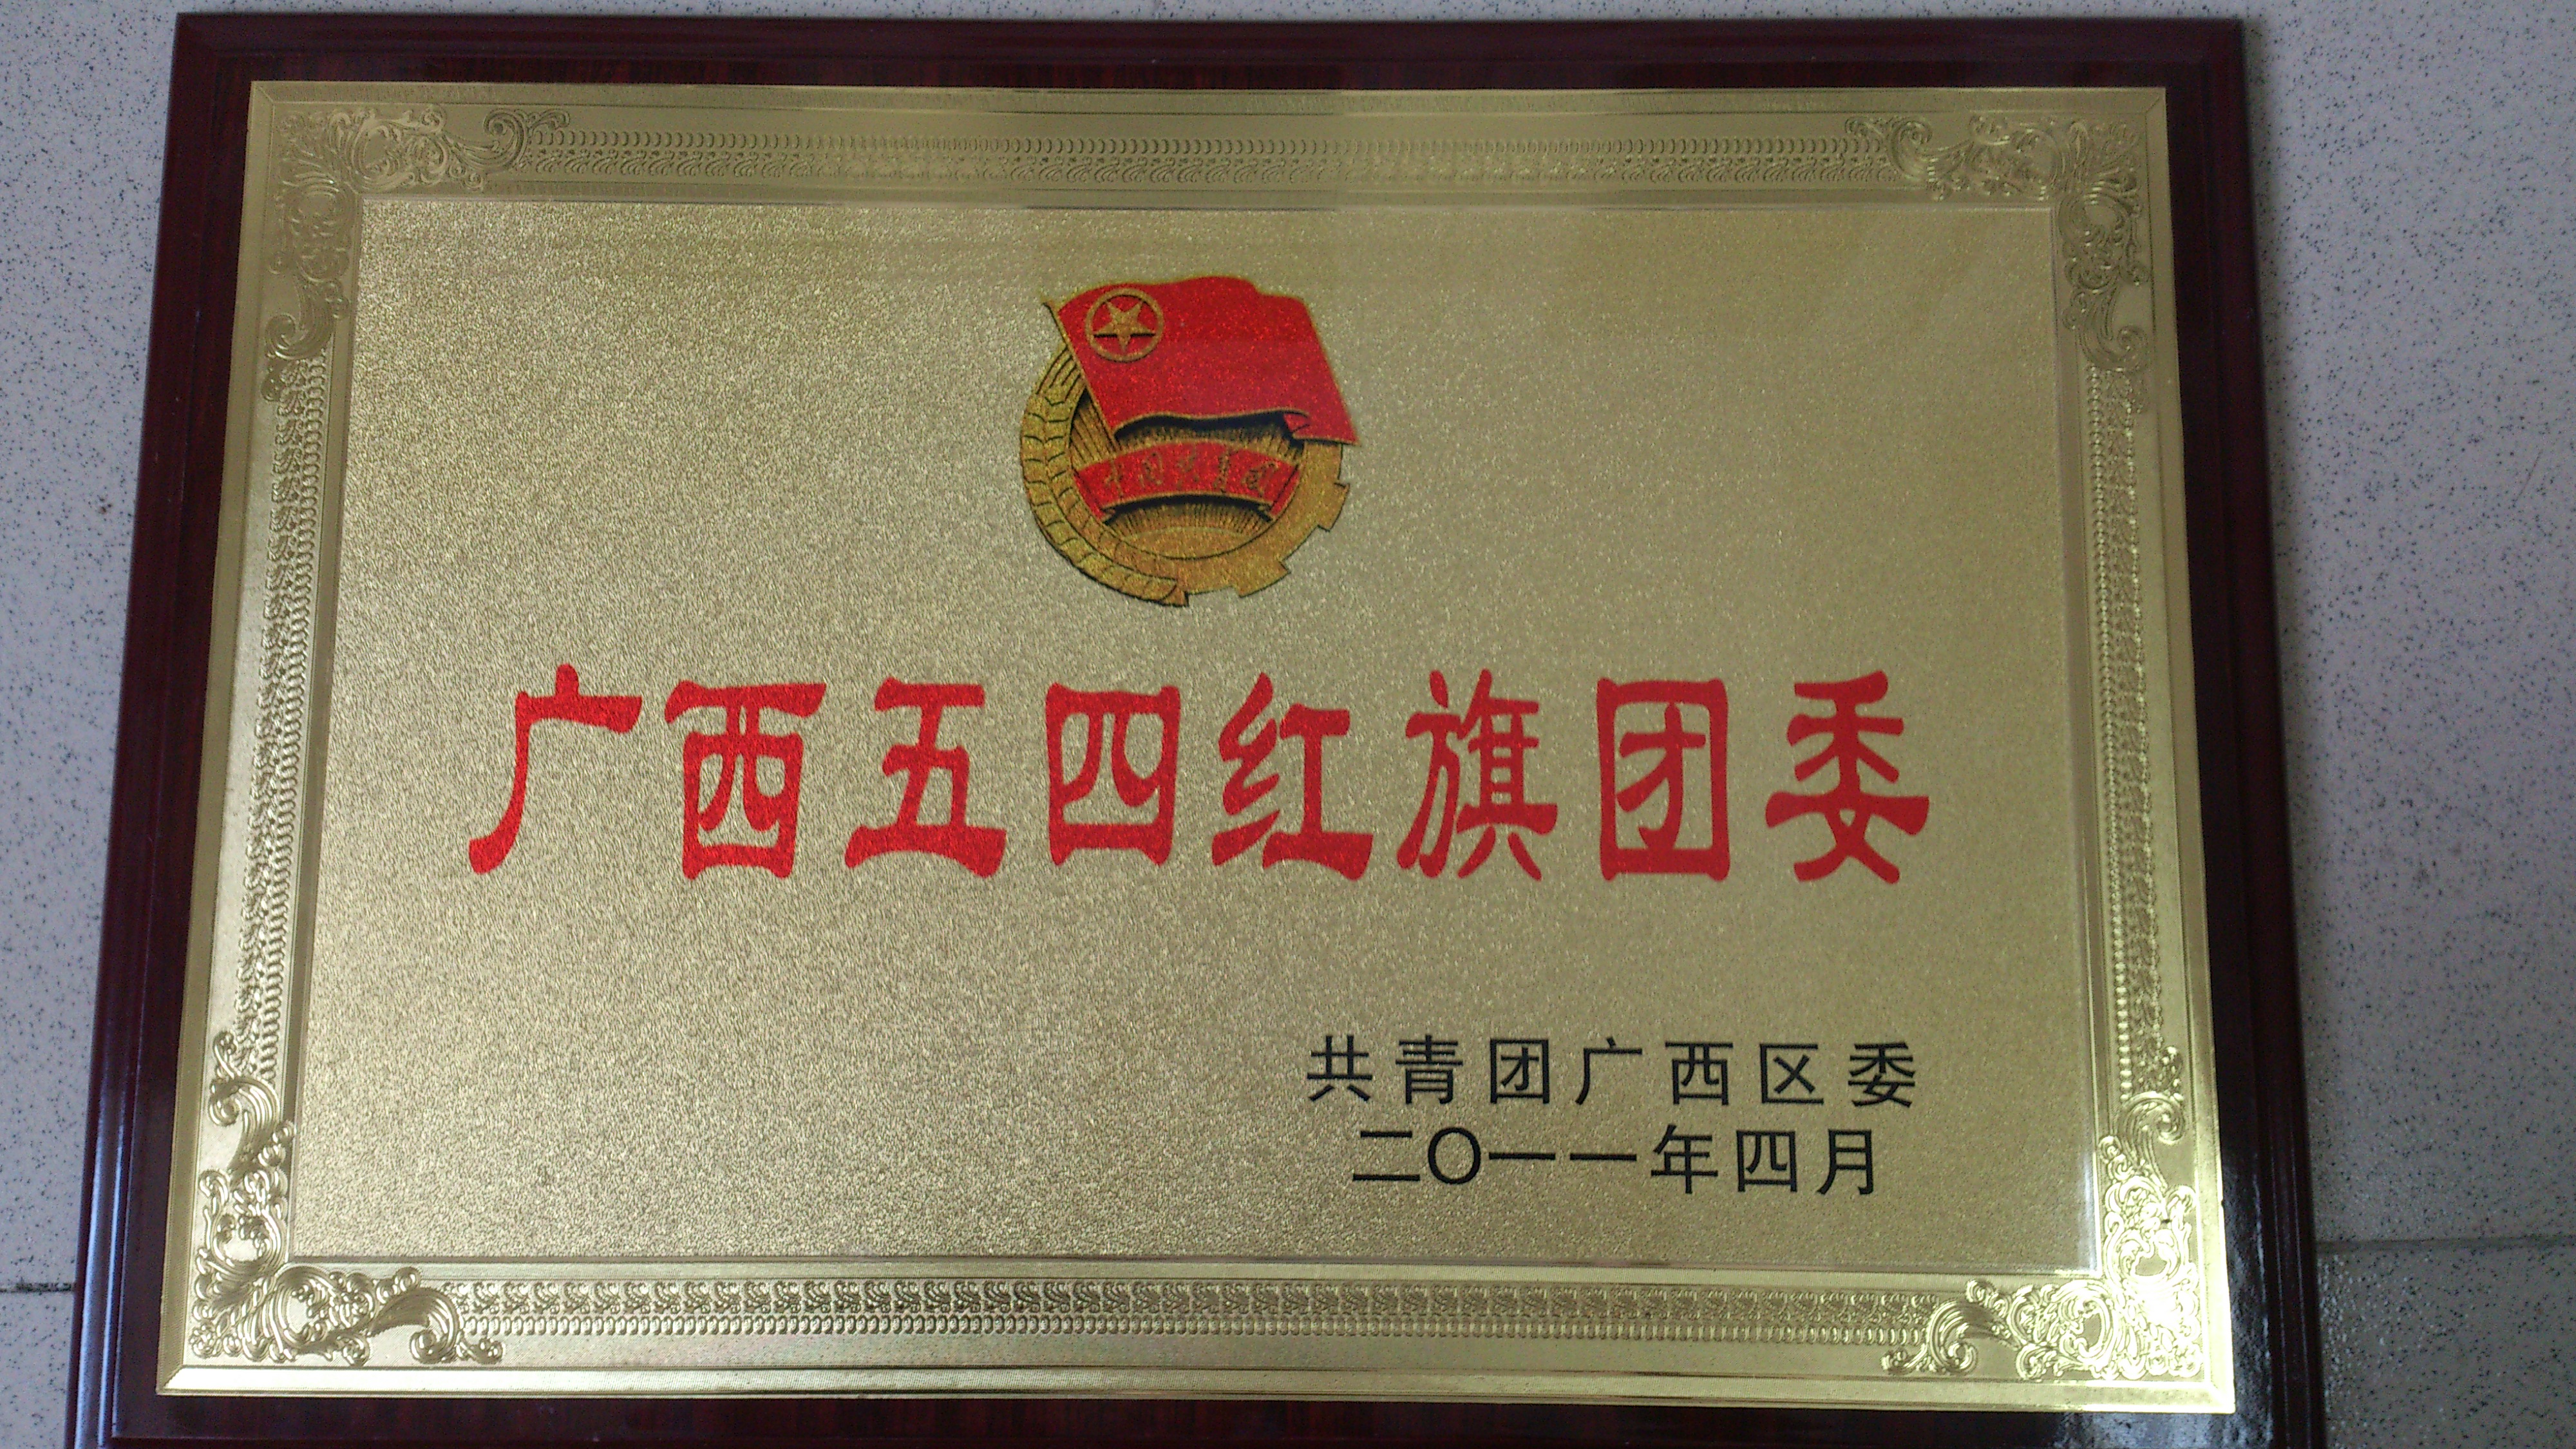 2011年 自治区级 广西五四红旗团委